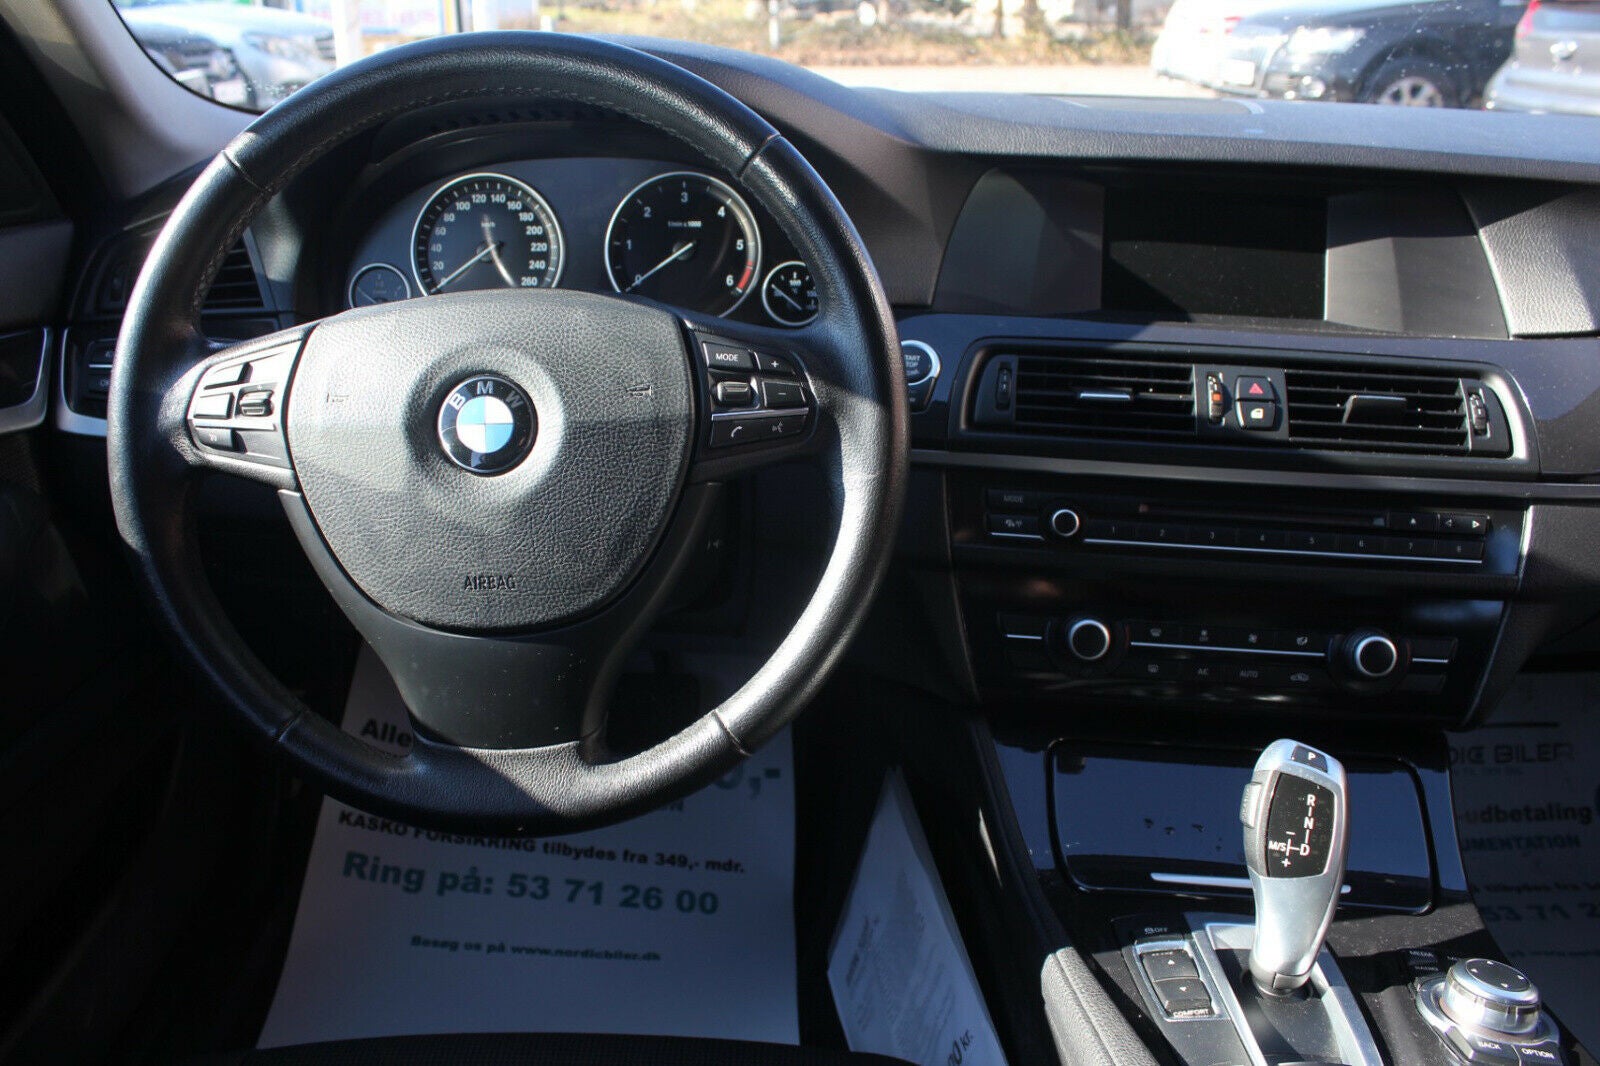 BMW 525d 2012